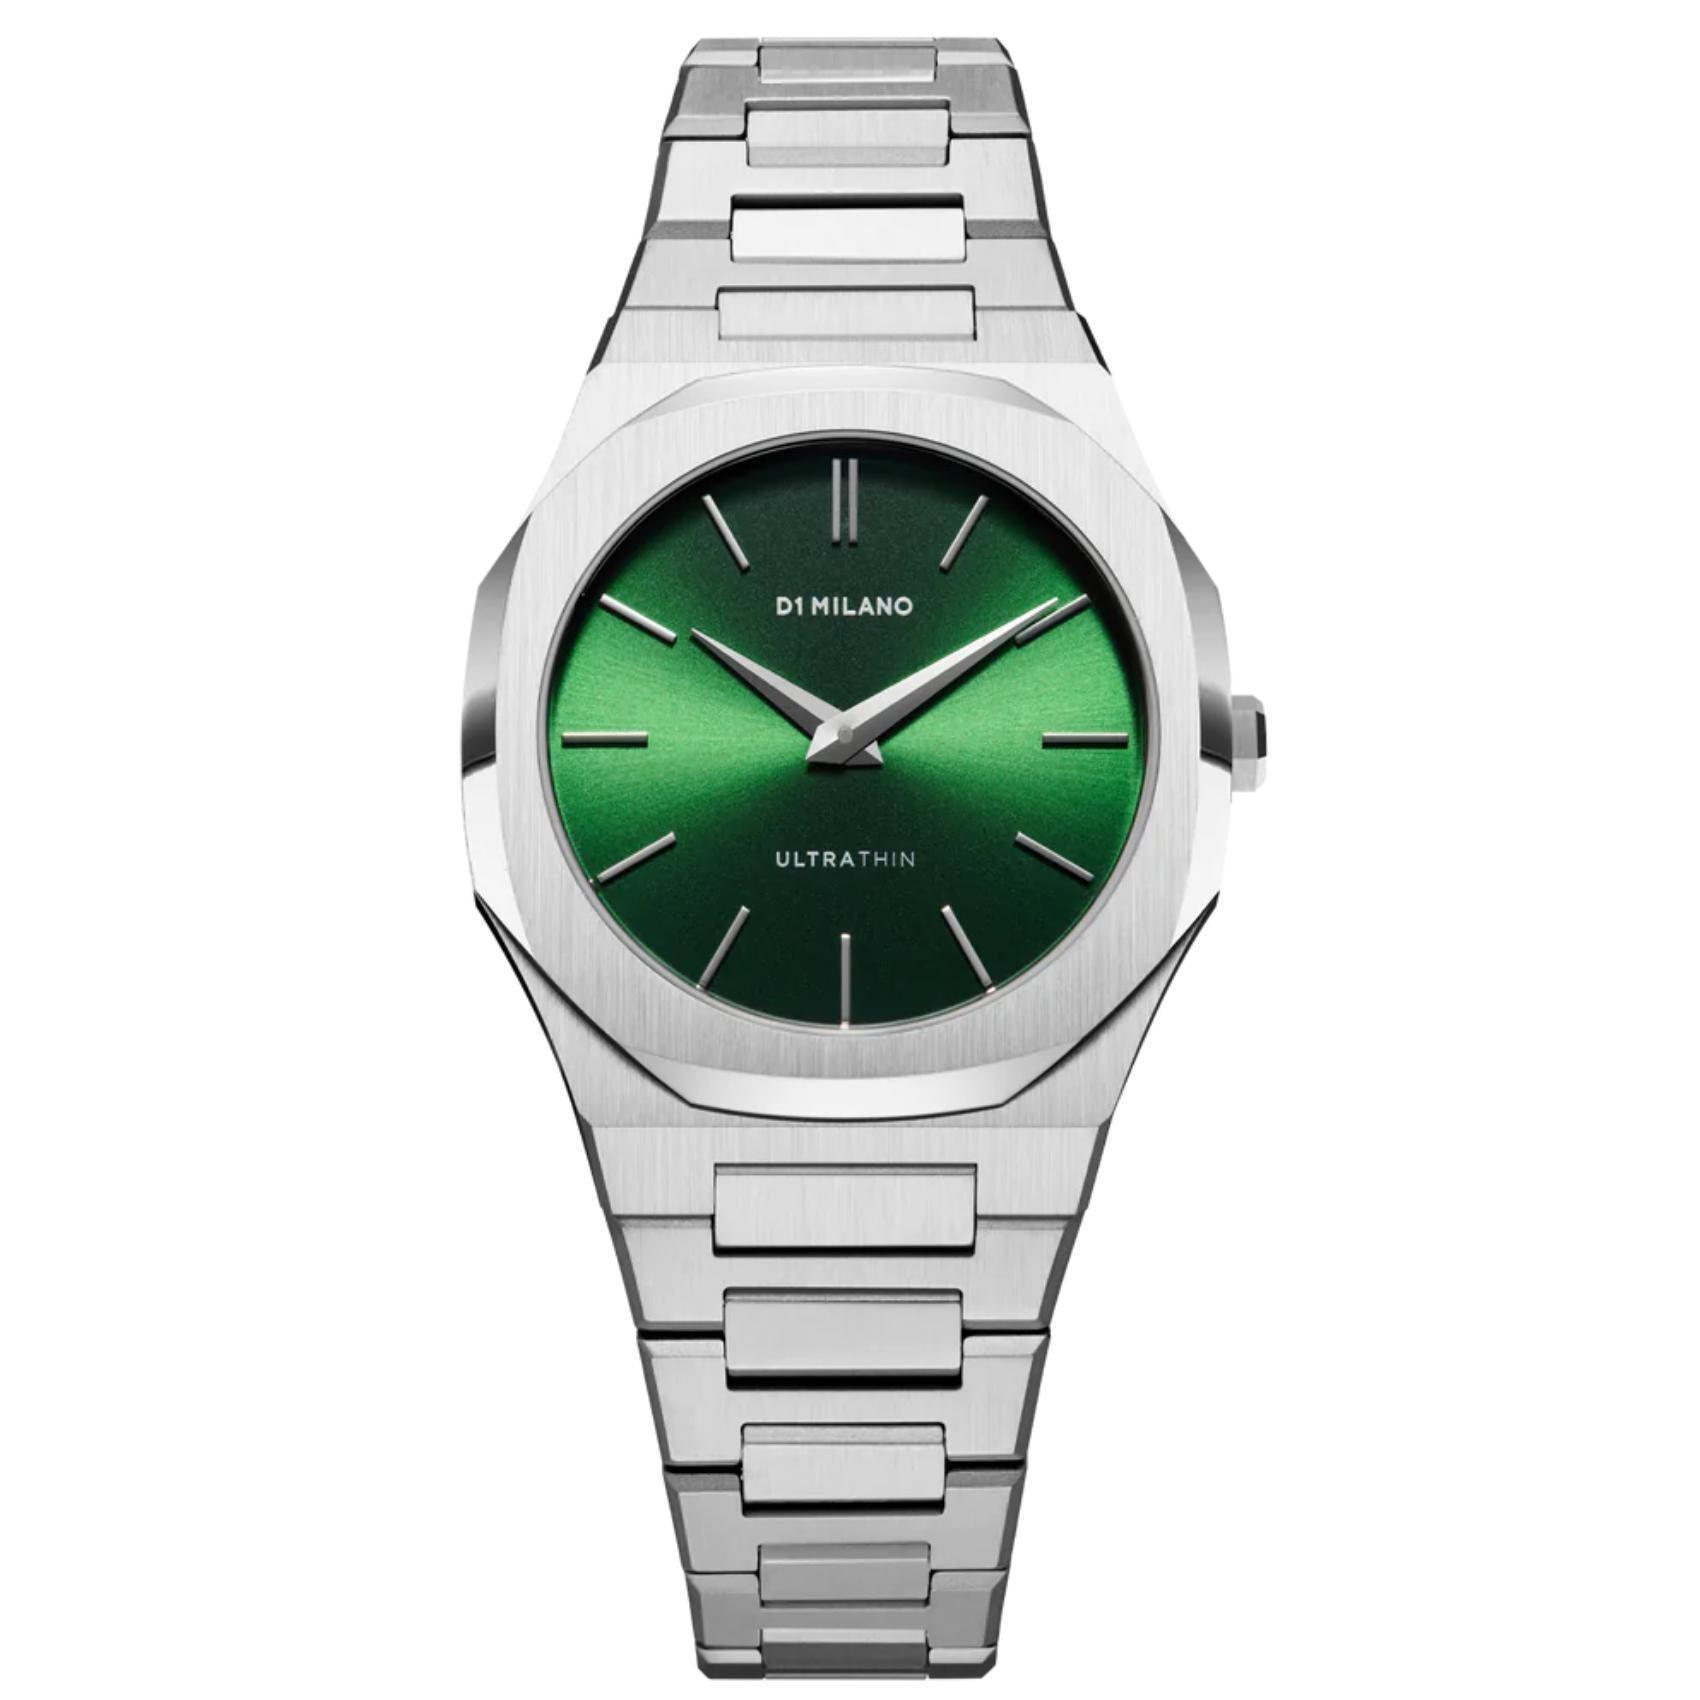 Γυναικείο ρολόι D1 Milano Ultra Thin Petite Moss D1-UTBL11 με ασημί ατσάλινο μπρασελέ και πράσινο καντράν 34mm με οκτάγωνο σχήμα.